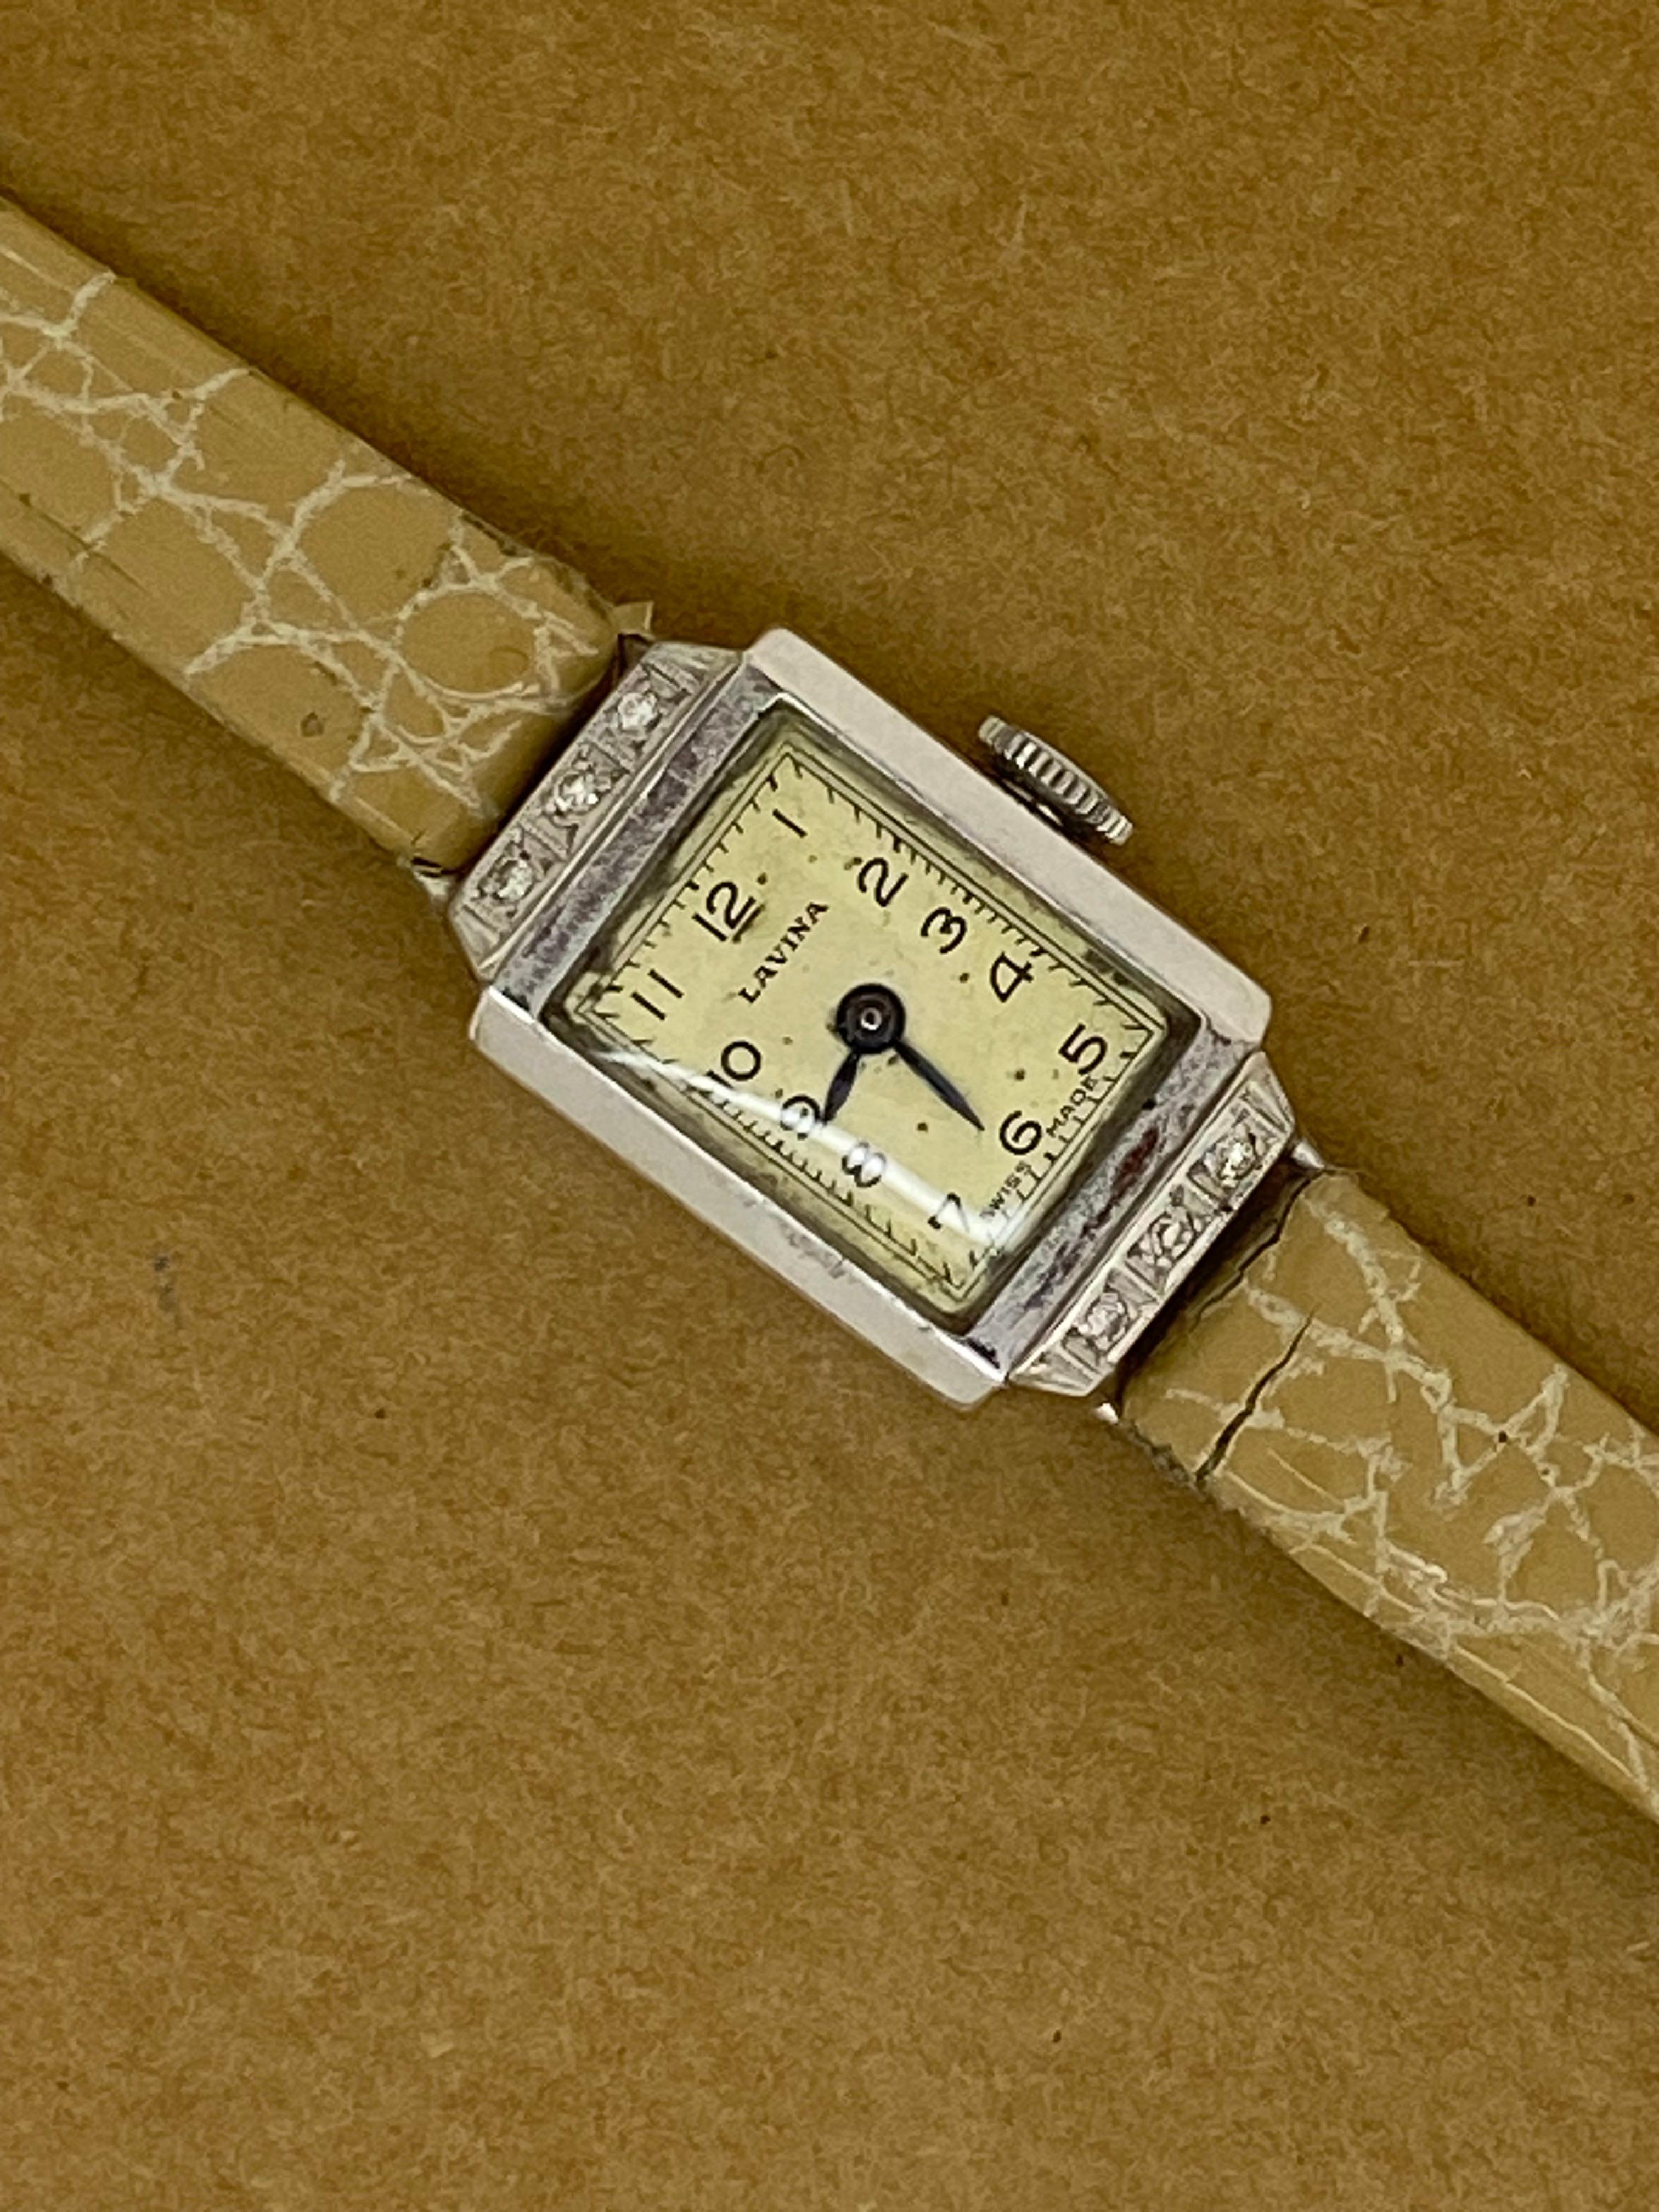 Diese Damenuhr stammt aus der Zeit des Art-Deco, 
dennoch ist es in einem schönen Vintage-Zustand & 
in ausgezeichnetem Betriebszustand.

Er verfügt über folgende Merkmale: 

18K Weißgold 15mm x 22mm Rechteckiges Gehäuse,
verziert mit 6 Diamanten im